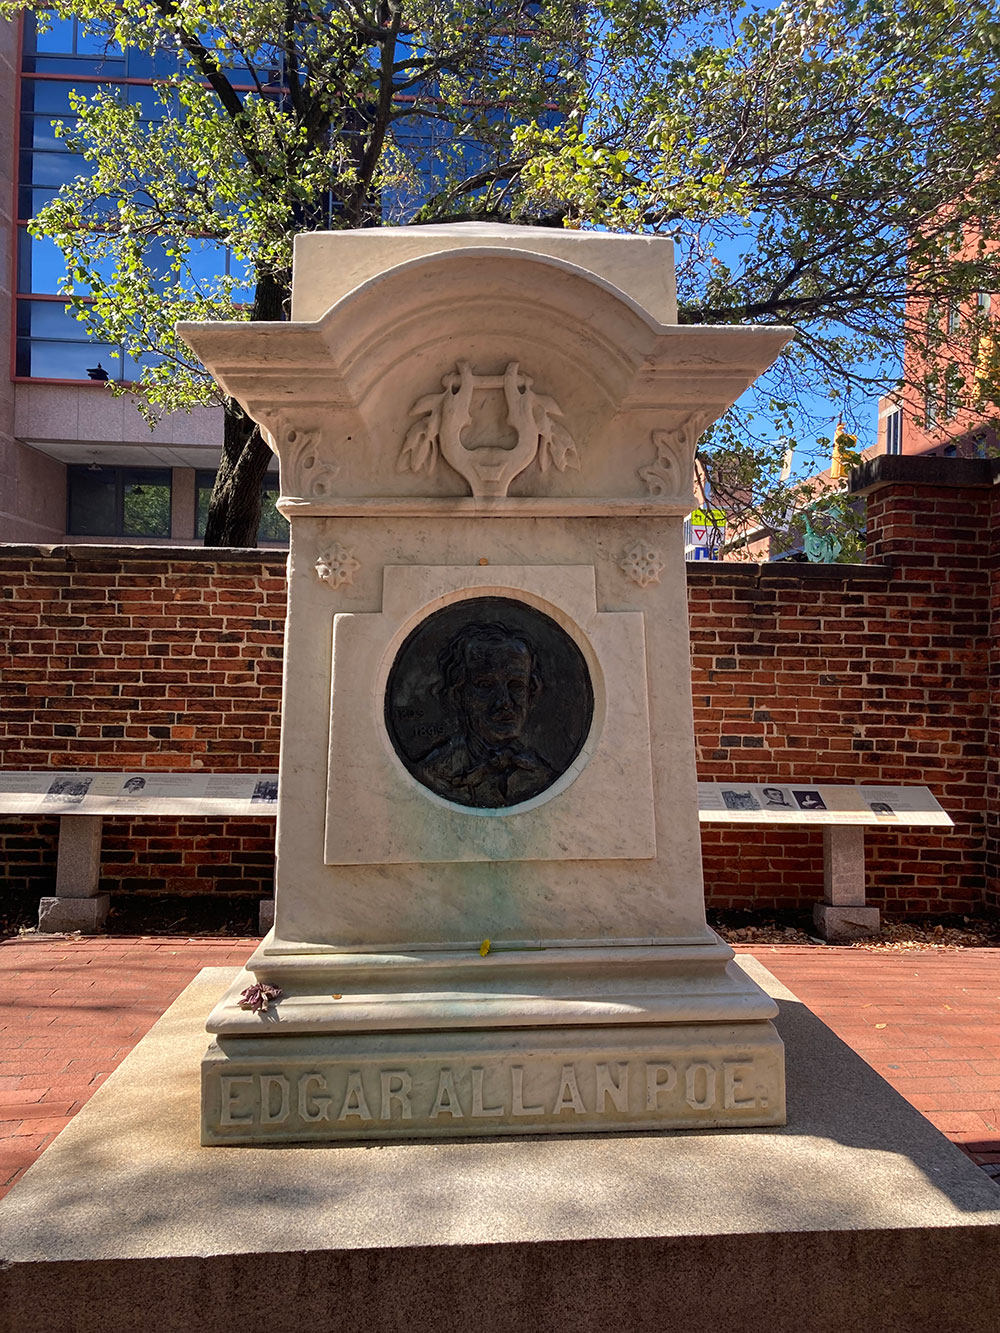 Edgar Allan Poe's Grave, Baltimore